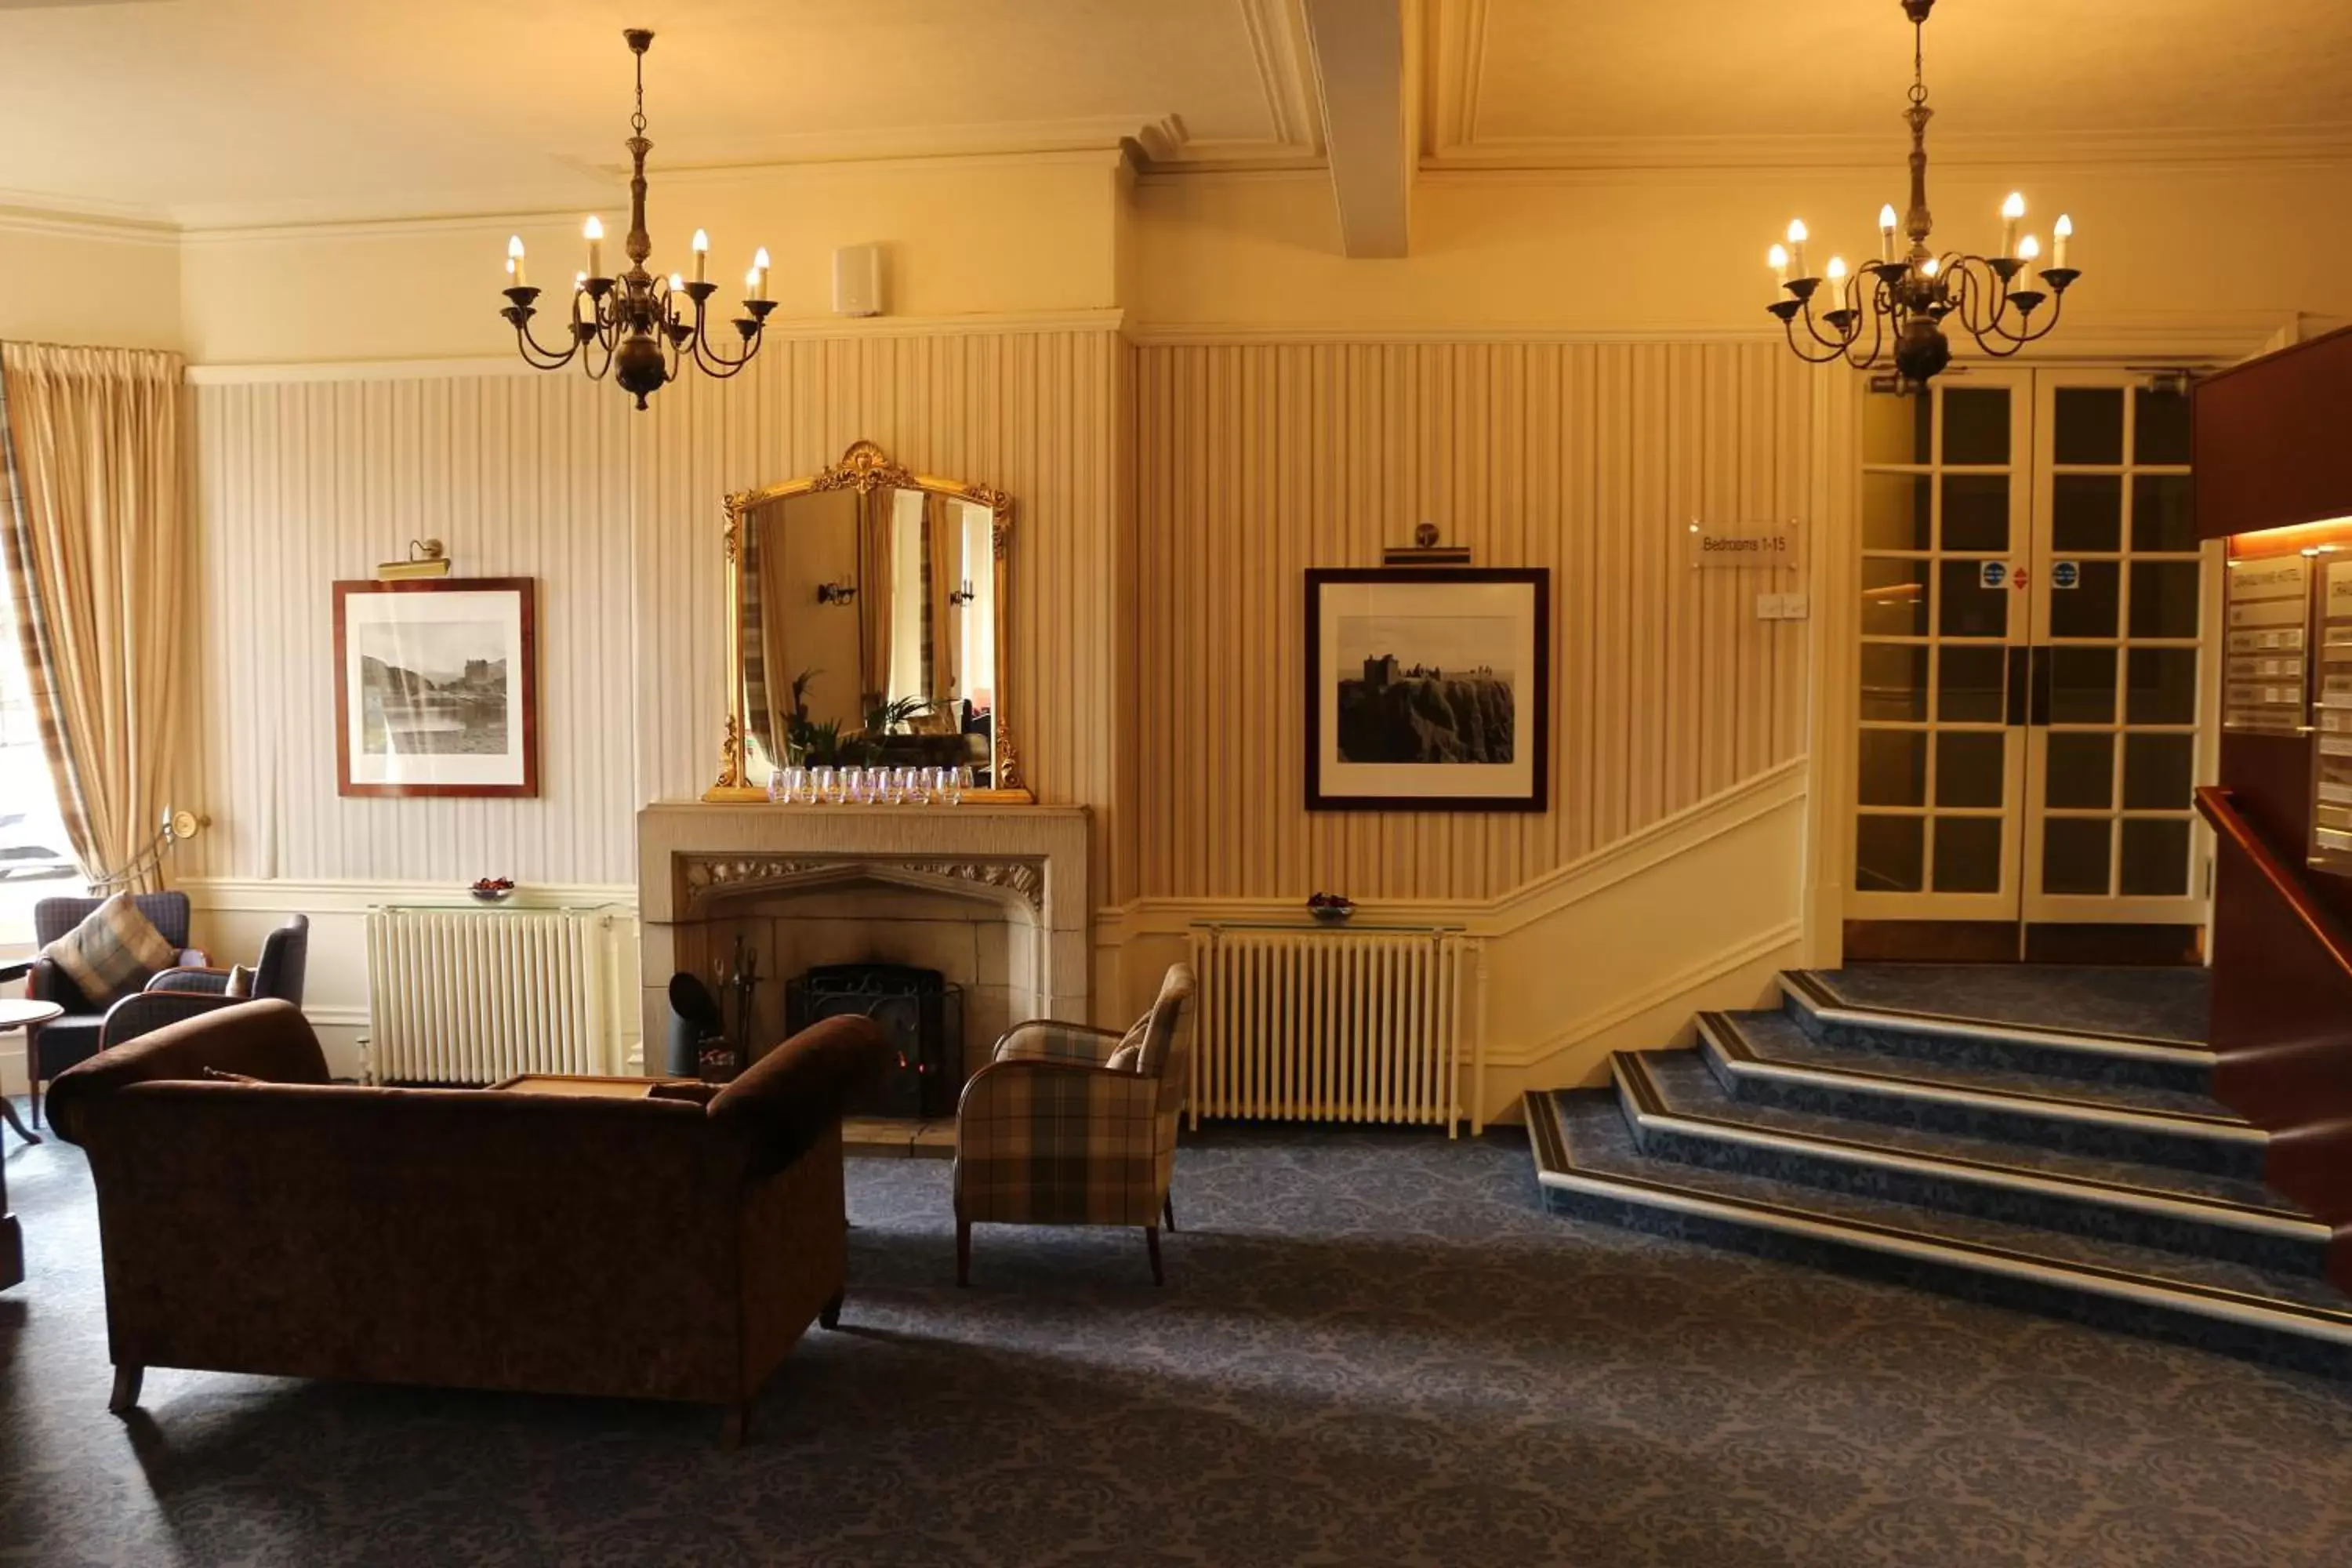 Lobby or reception in Craiglynne Hotel